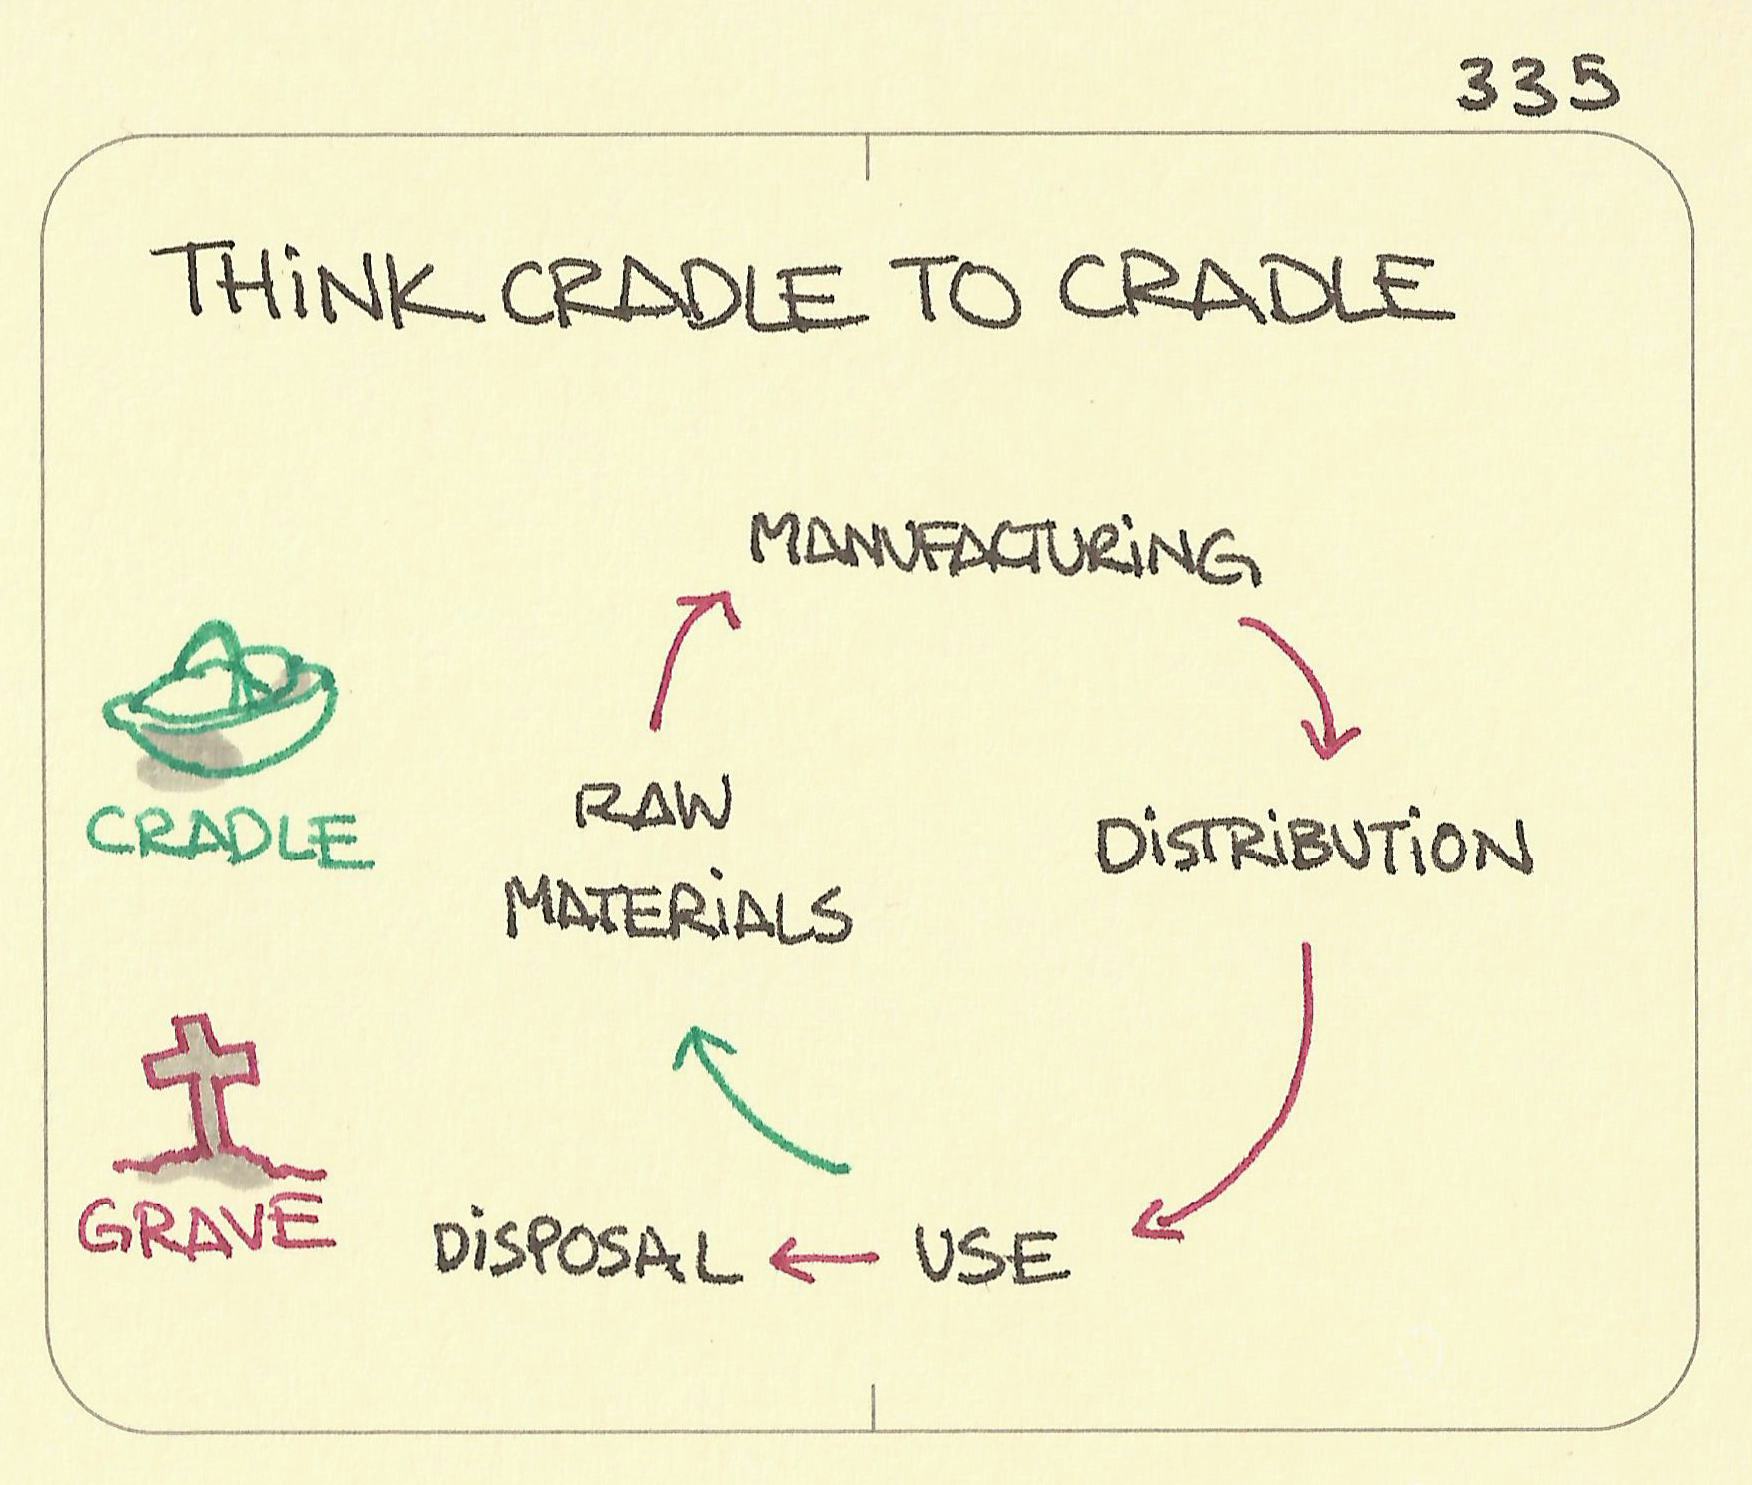 Think cradle to cradle - Sketchplanations